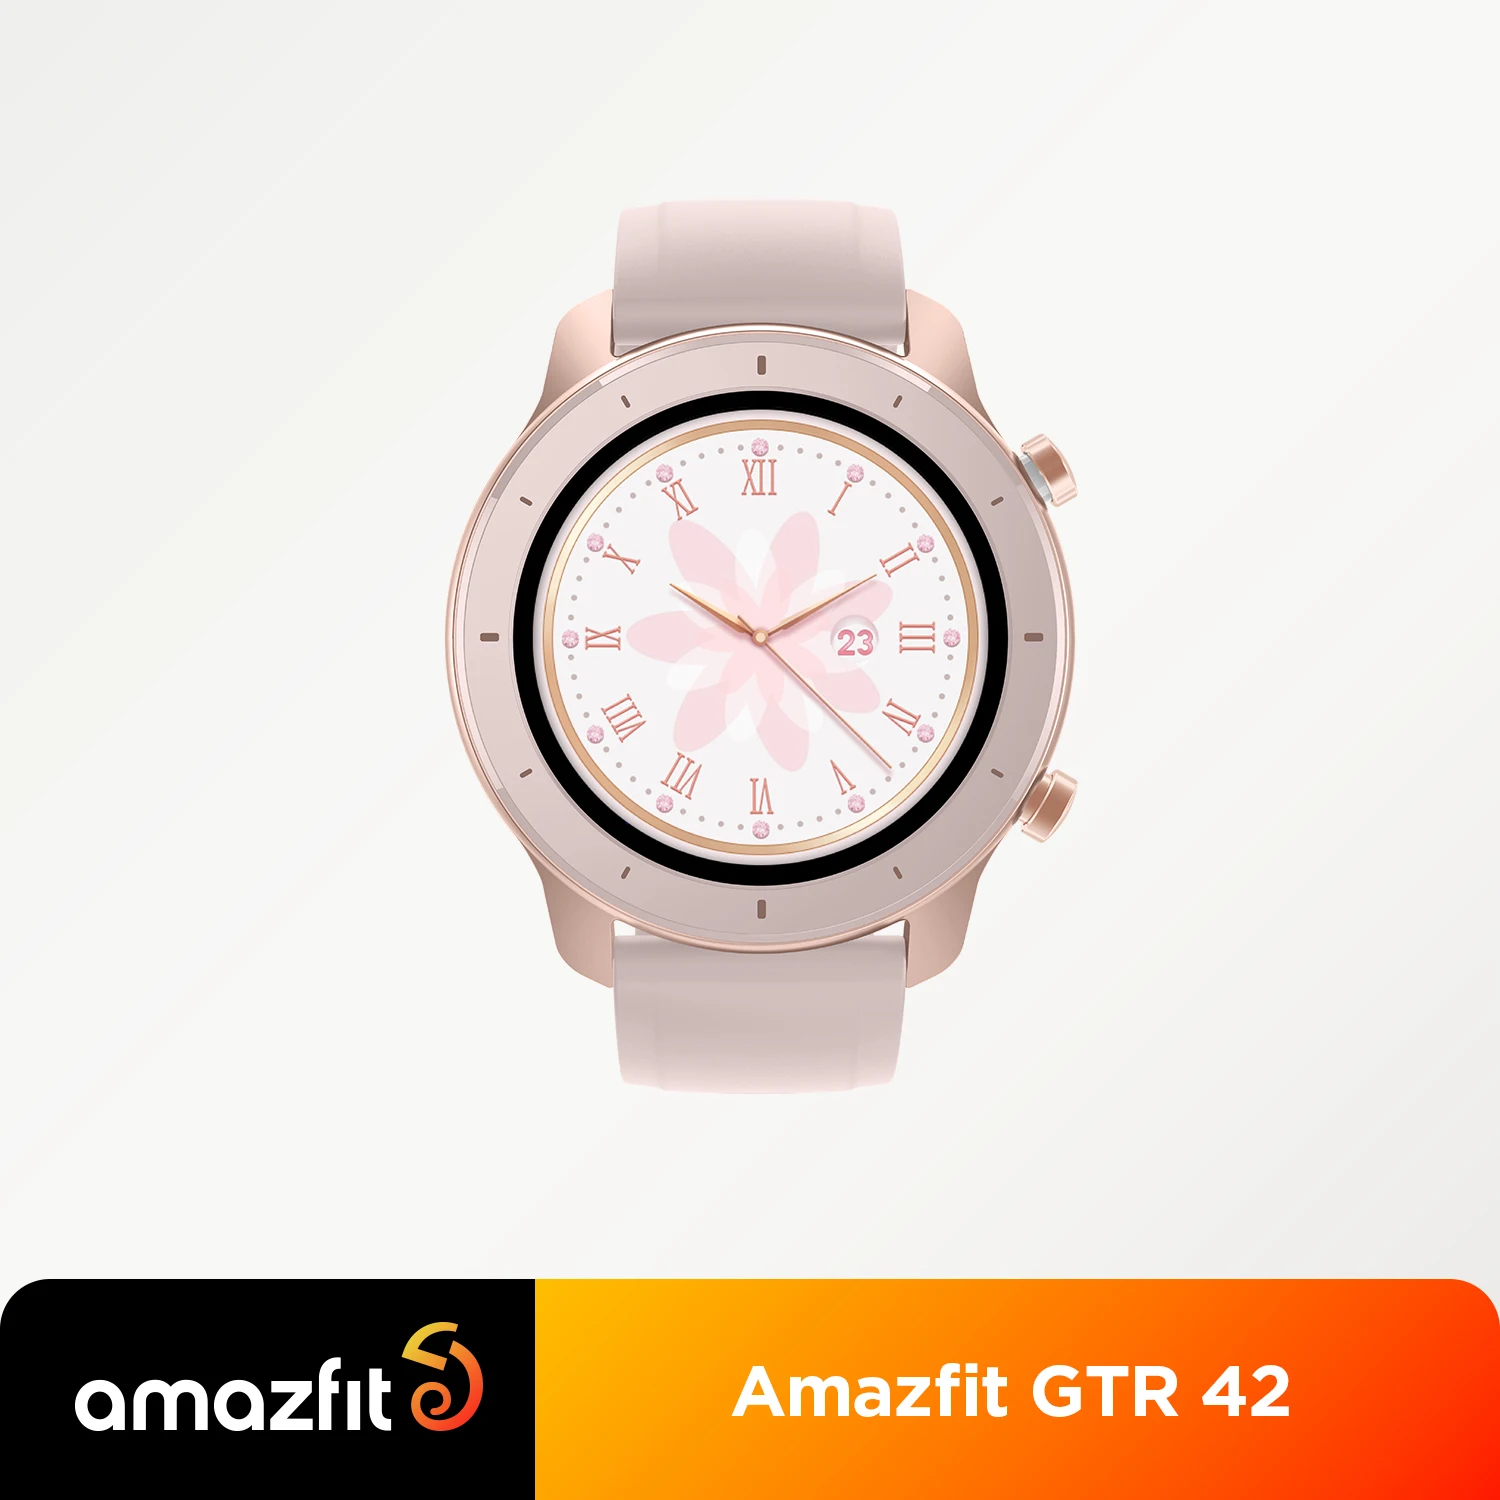  Умные часы Amazfit GTR диагональю 42 мм с аккумулятором на 12 дней 